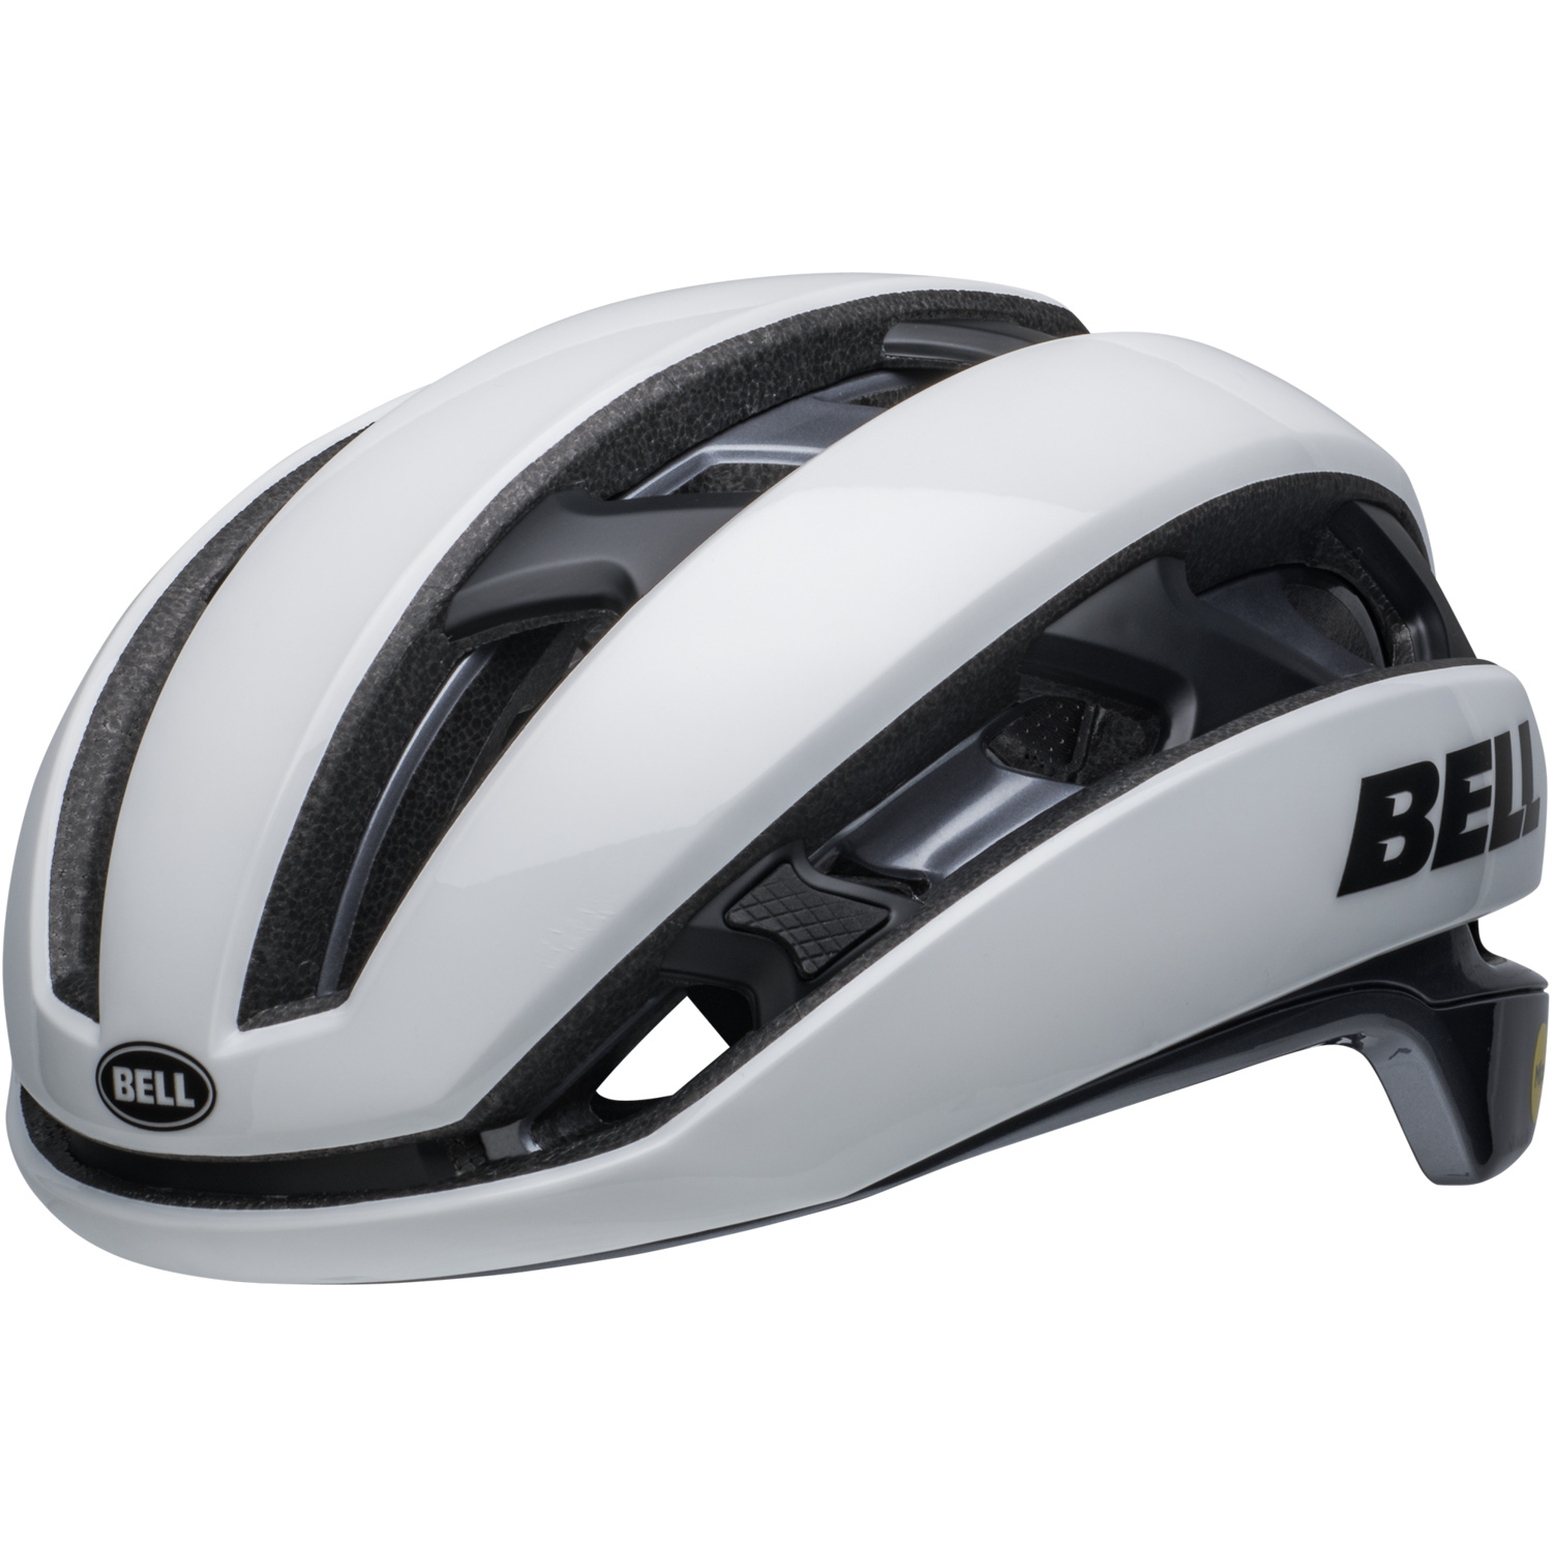 Produktbild von Bell XR Spherical Helm - matte/gloss white/black